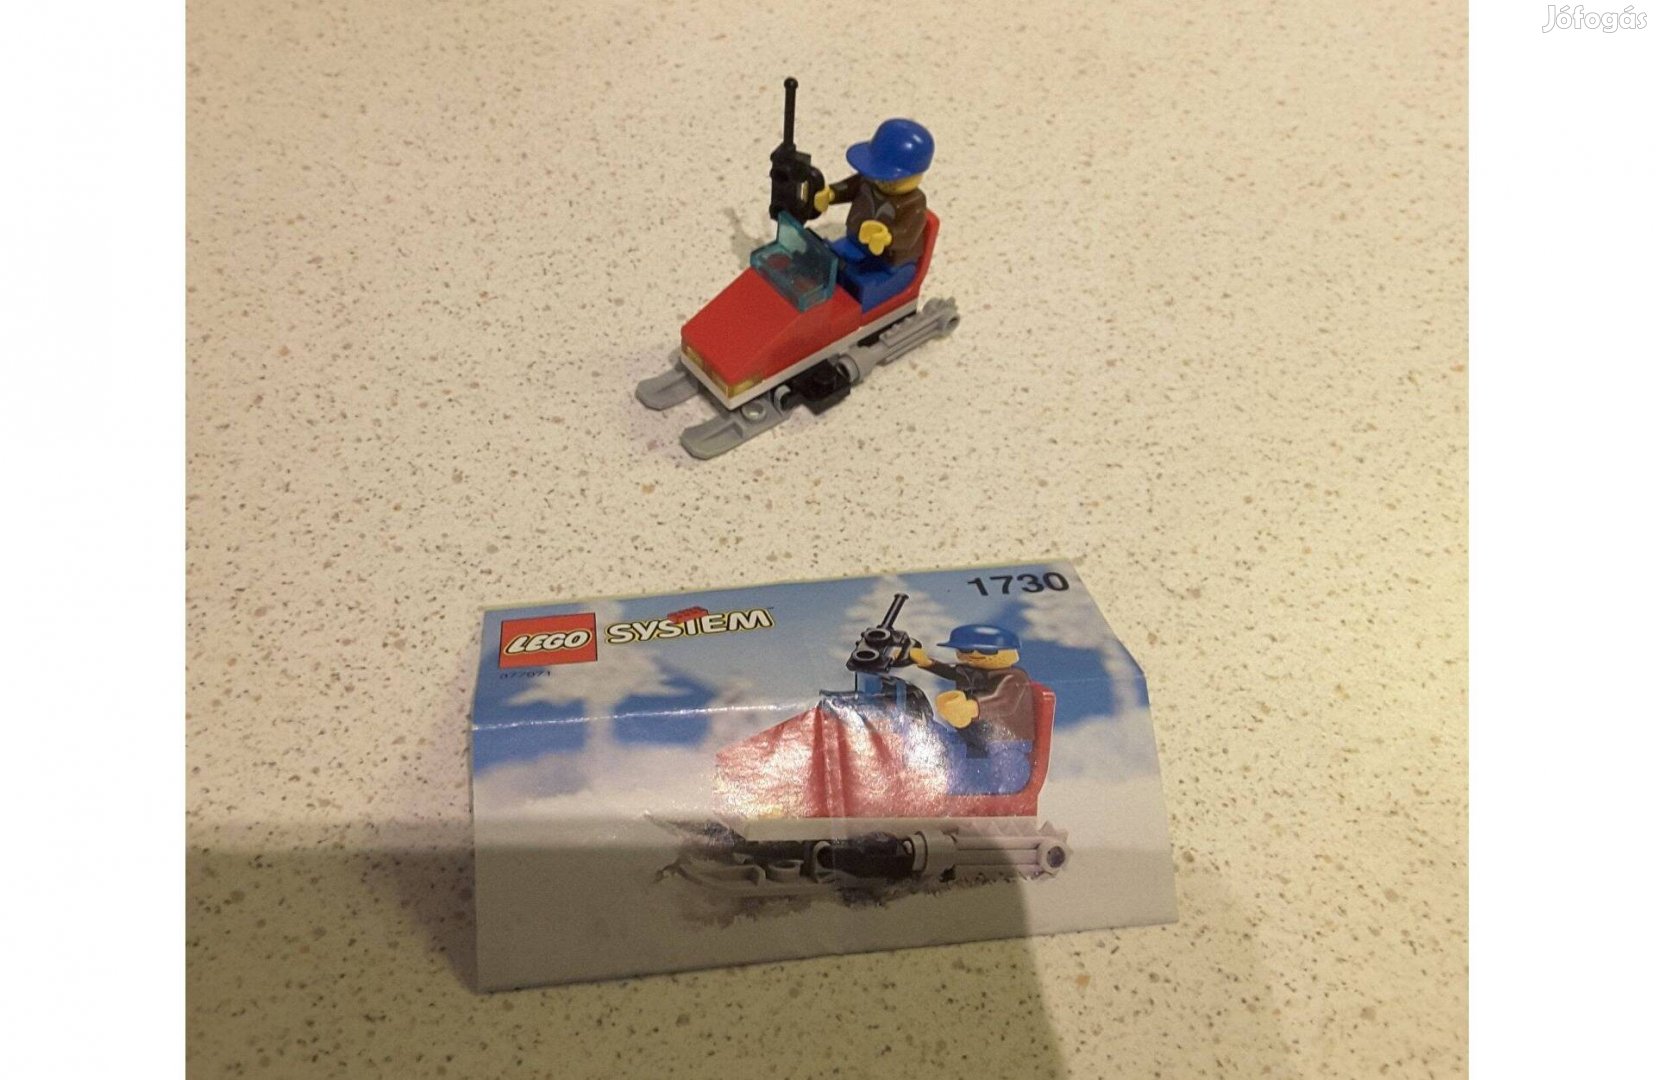 Lego 1730 Hójáró / hószán / Snow scooter + leírás